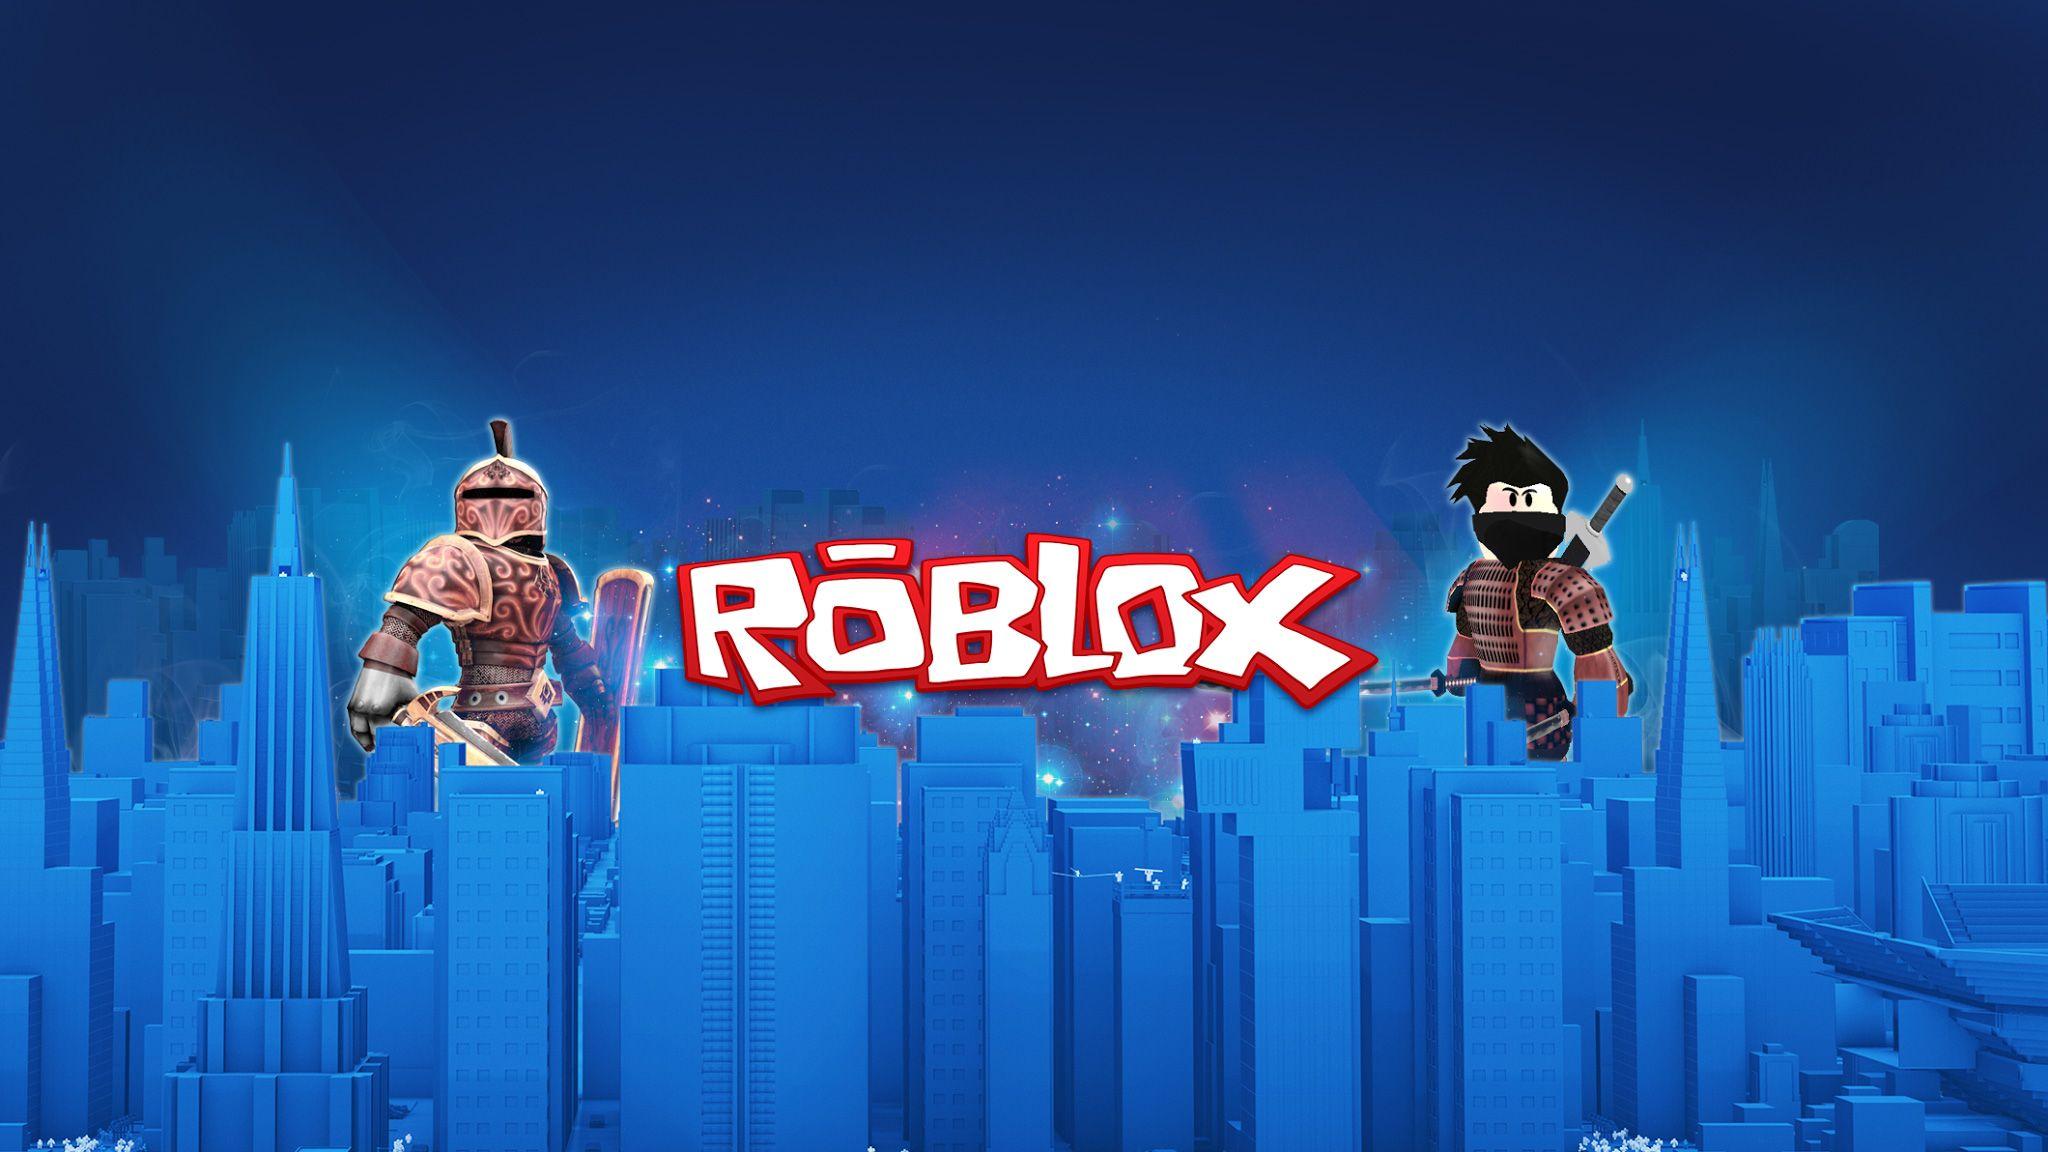 Hình nền desktop Roblox: Tại sao không tô điểm cho desktop của bạn với những hình nền Roblox vô cùng độc đáo? Hình ảnh sẽ mang đến cho bạn những cảm xúc thăng hoa khi chơi game cùng với nhân vật ưa thích của mình. Nhấp vào ảnh để xem những hình nền Roblox đẹp nhất.